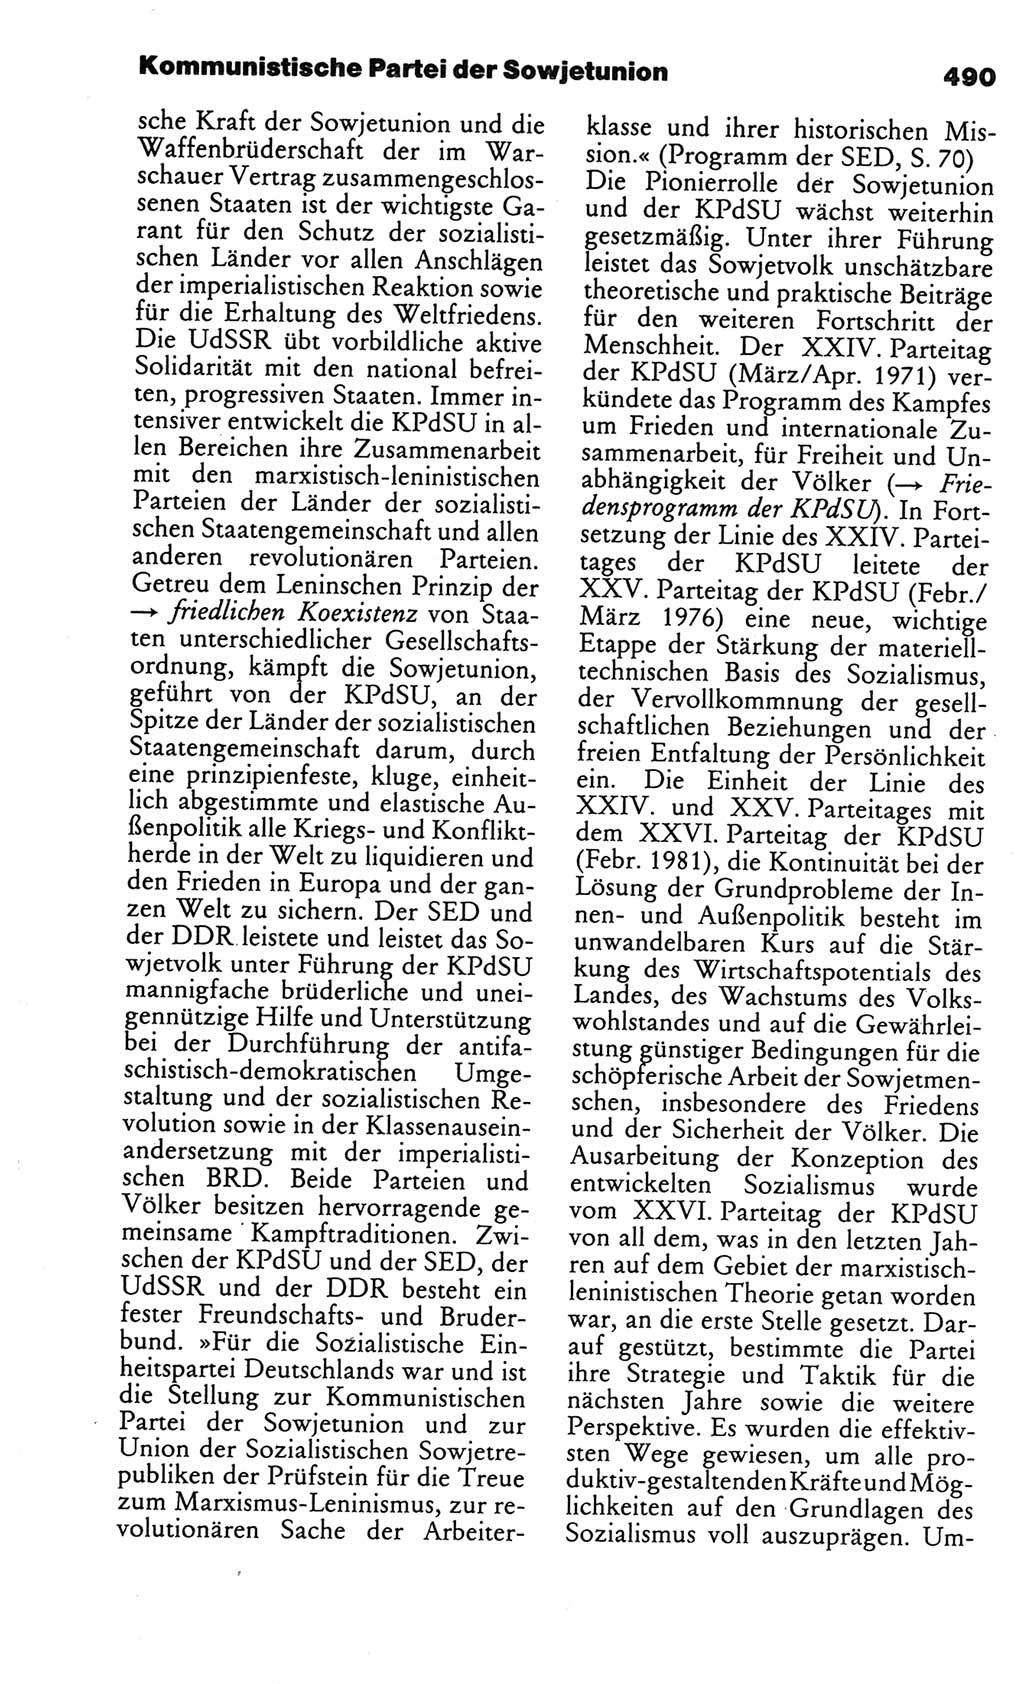 Kleines politisches Wörterbuch [Deutsche Demokratische Republik (DDR)] 1986, Seite 490 (Kl. pol. Wb. DDR 1986, S. 490)